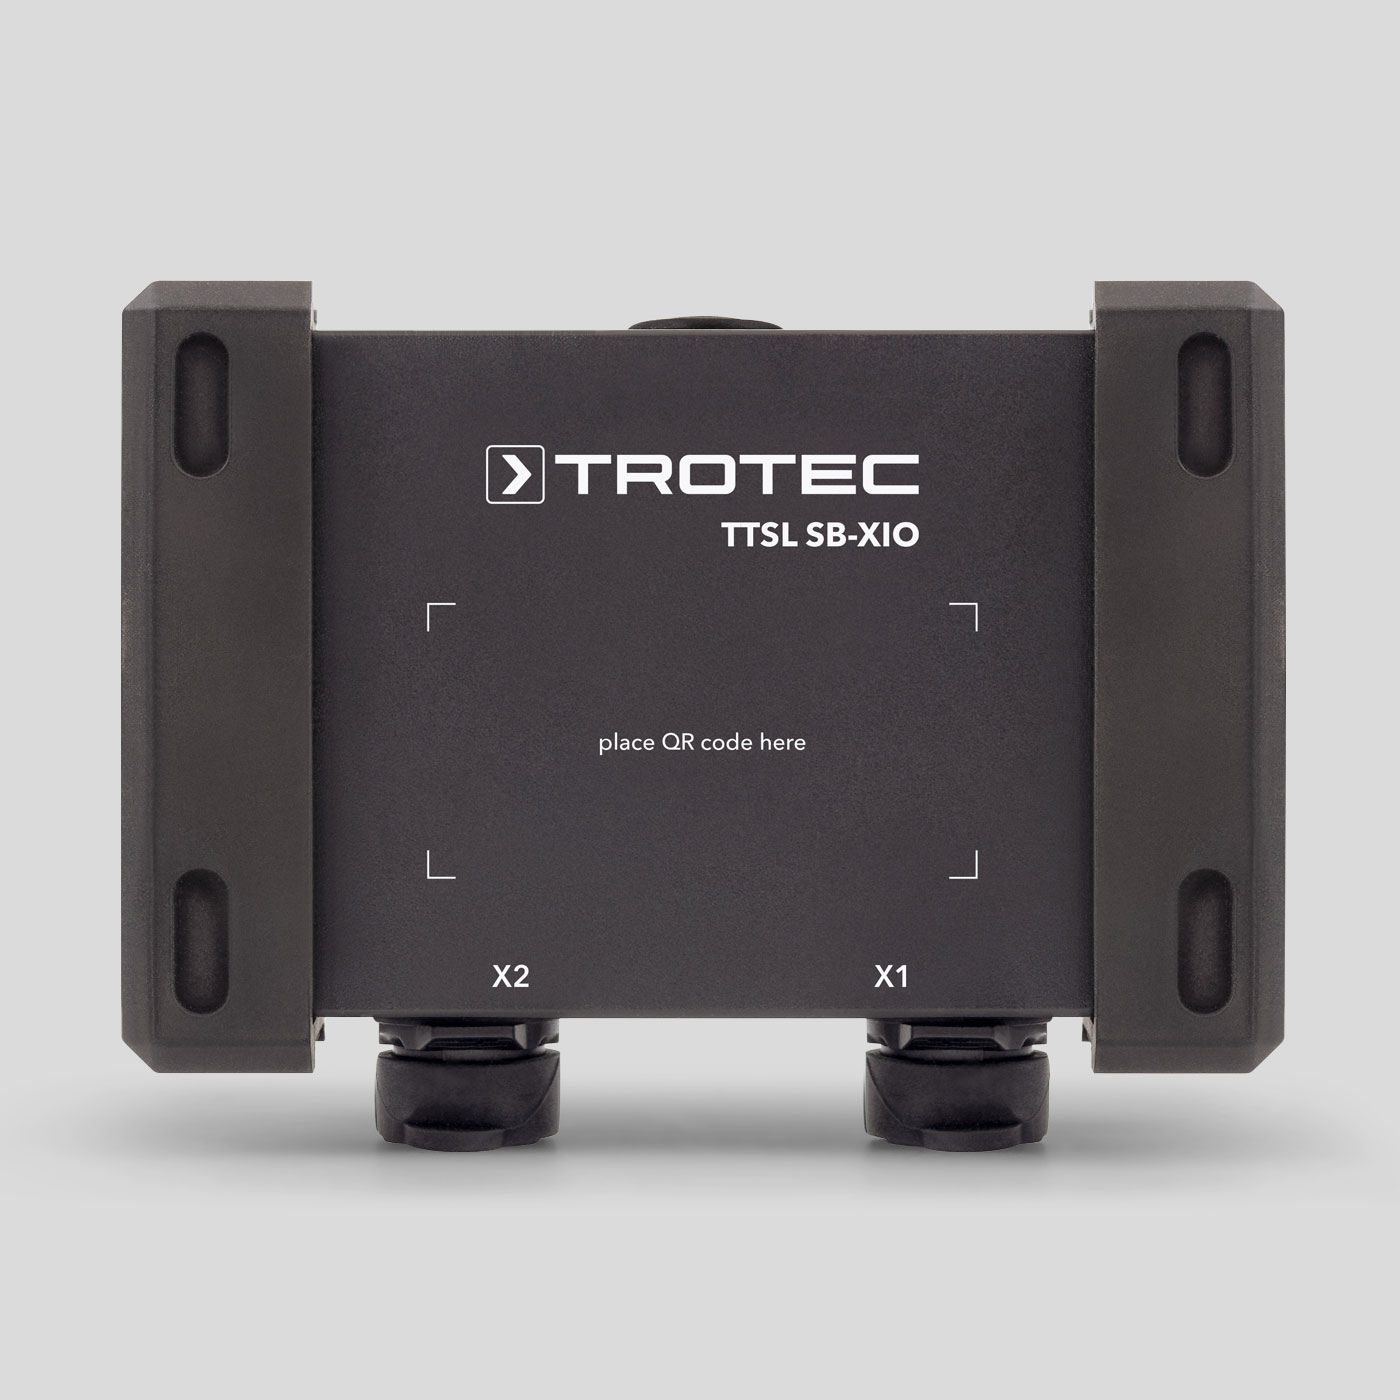 TTSL® SB-XIO draadloze sensorbox voor machines, installaties en sensorsystemen